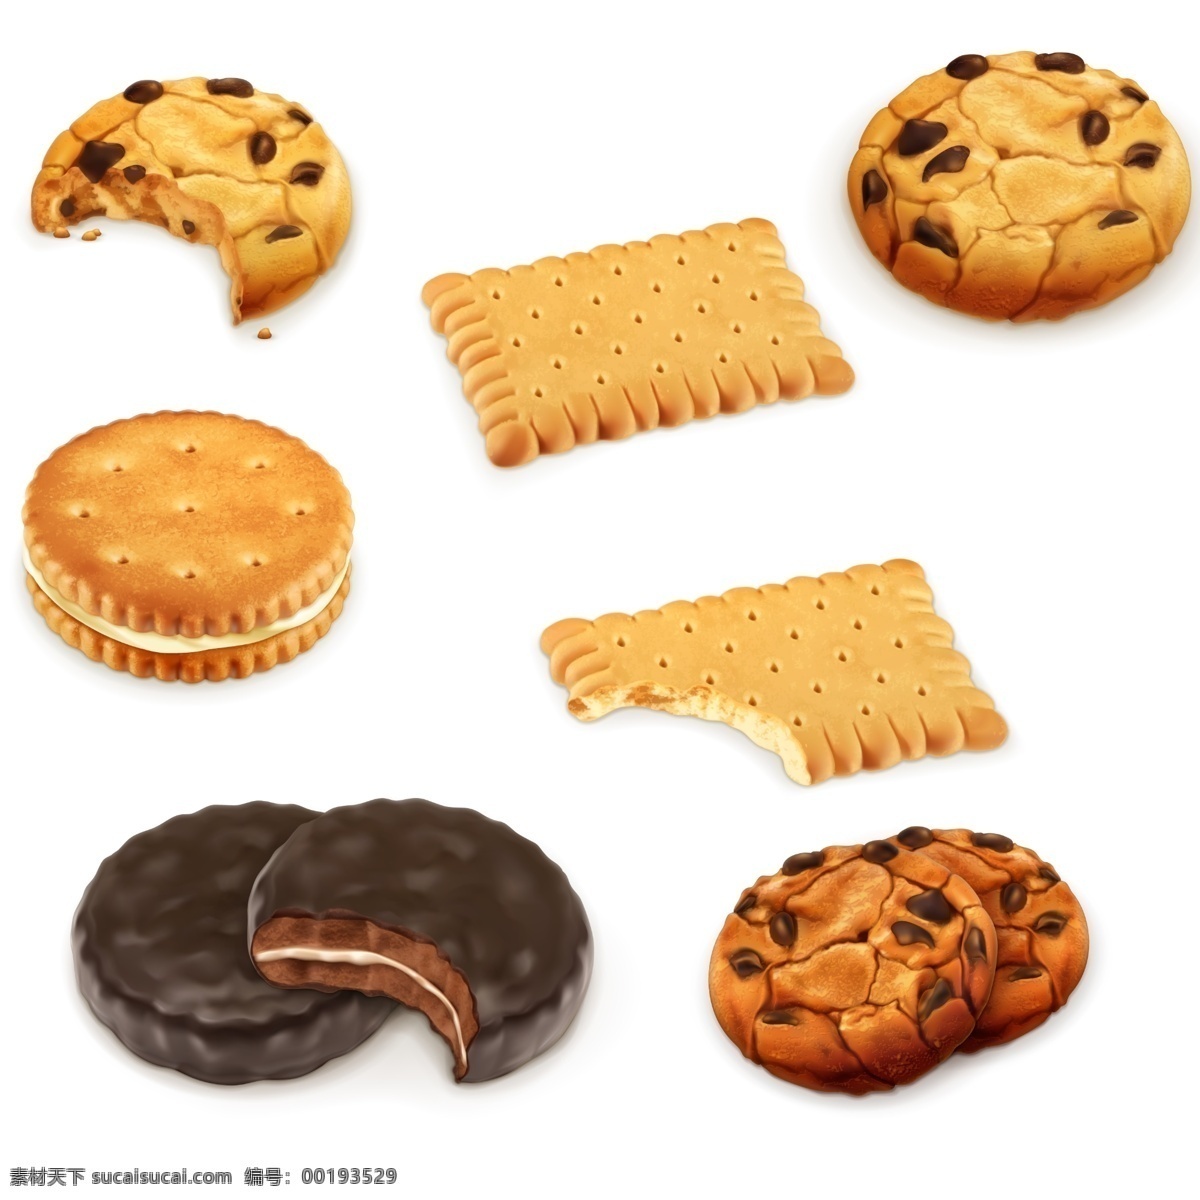 饼干 饼干psd 饼干素材 饼干元素 元素素材 广告素材 巧克力 巧克力饼干 夹心饼干 圆形饼干 长方形饼干 分层素材